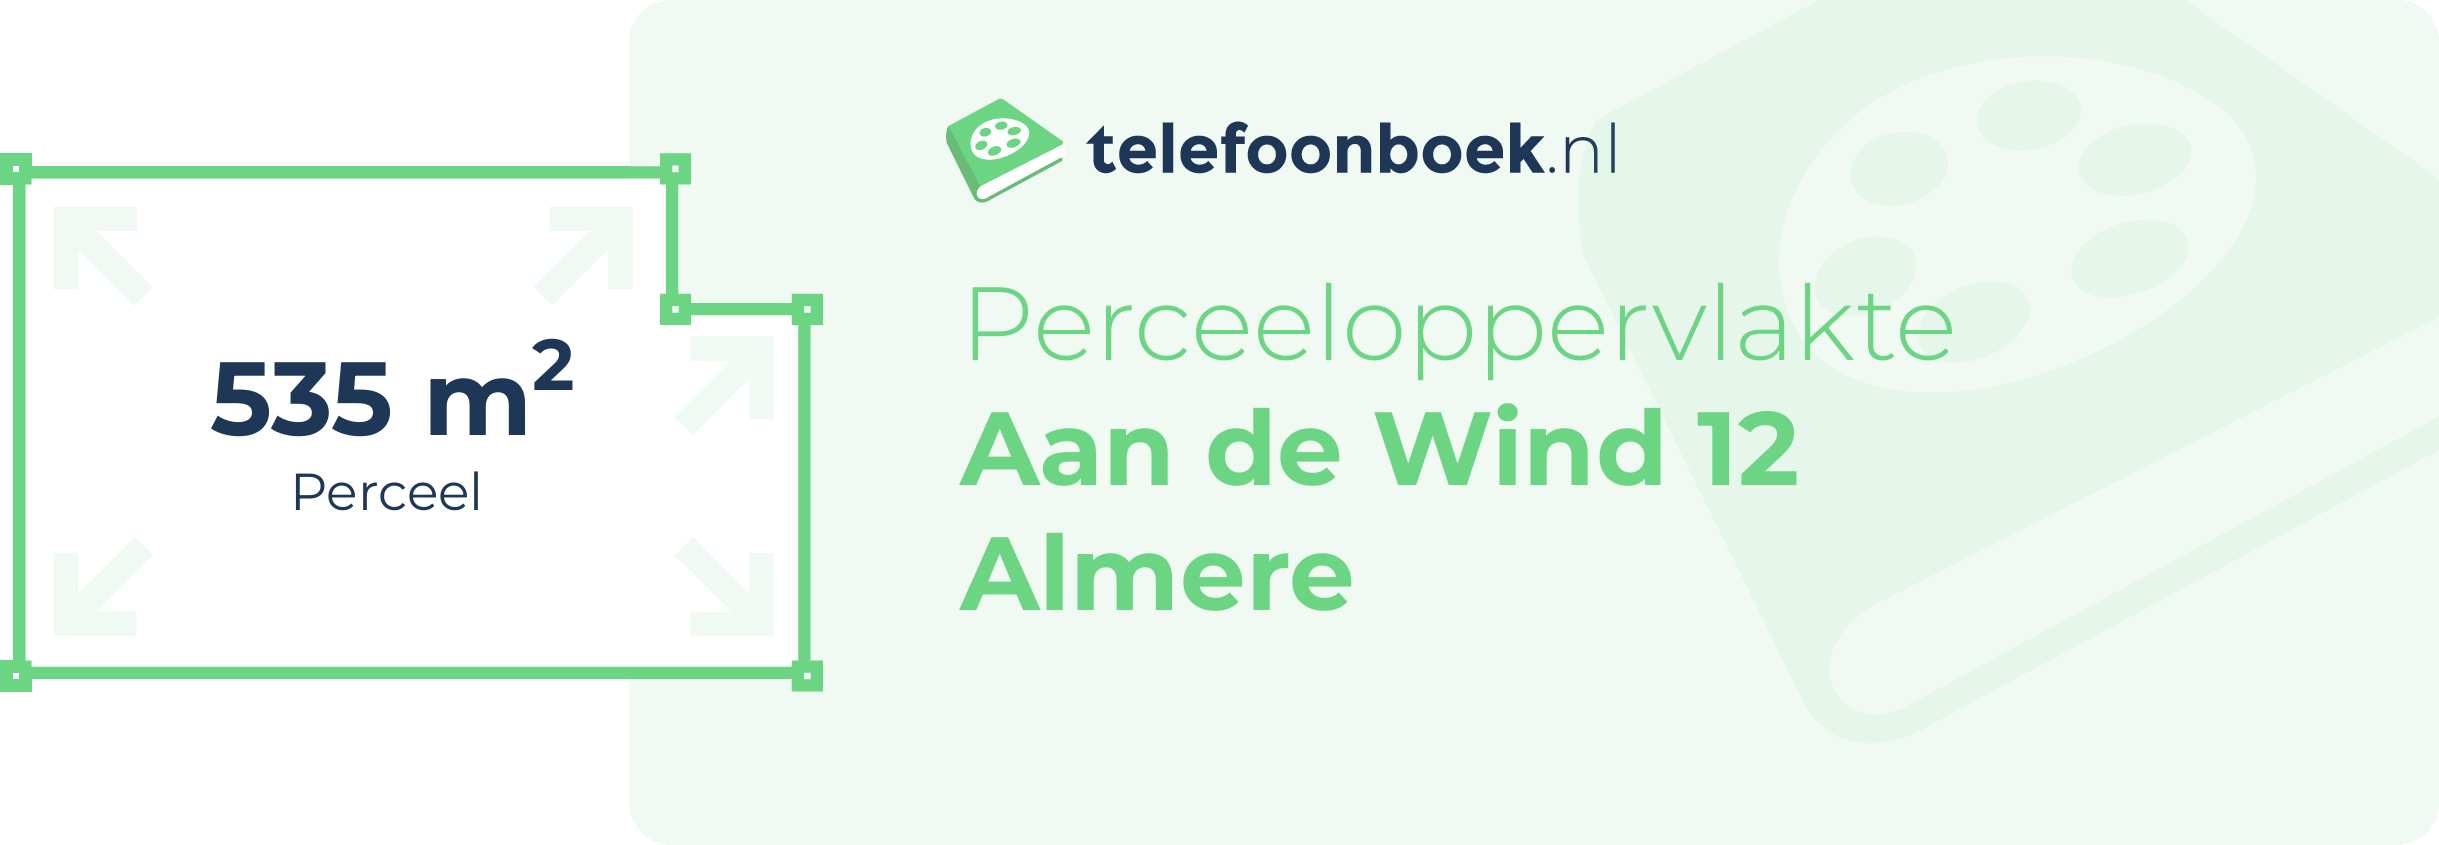 Perceeloppervlakte Aan De Wind 12 Almere